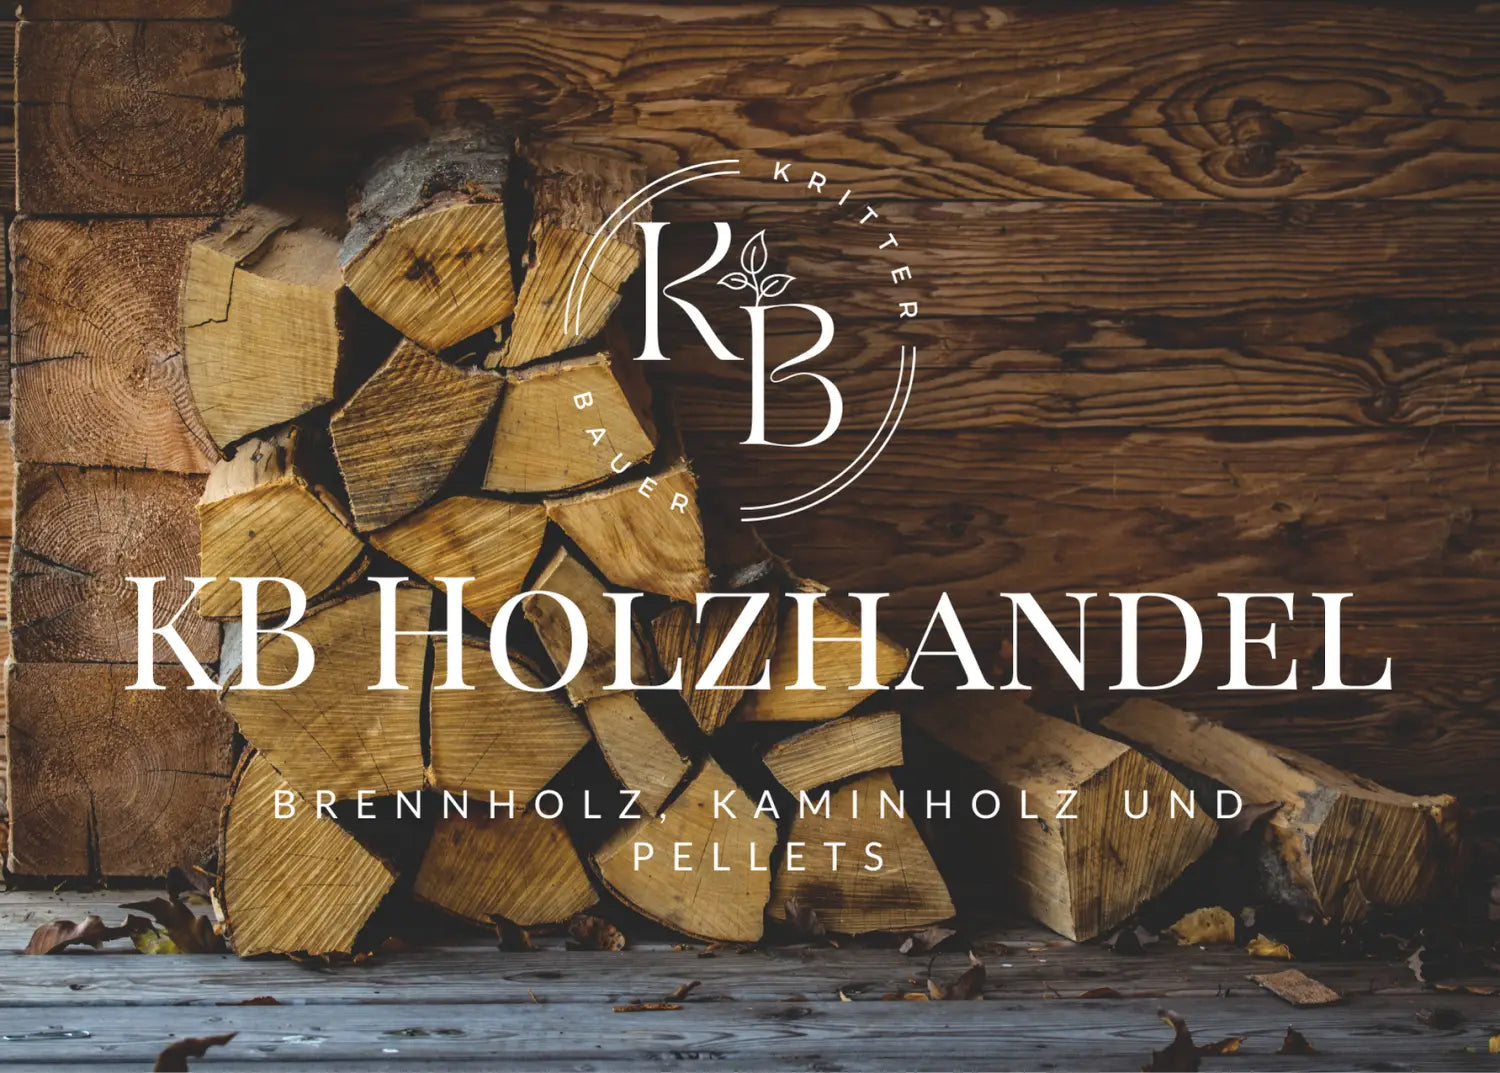 Wo kann man Brennholz in der Nähe von Heilbronn kaufen?